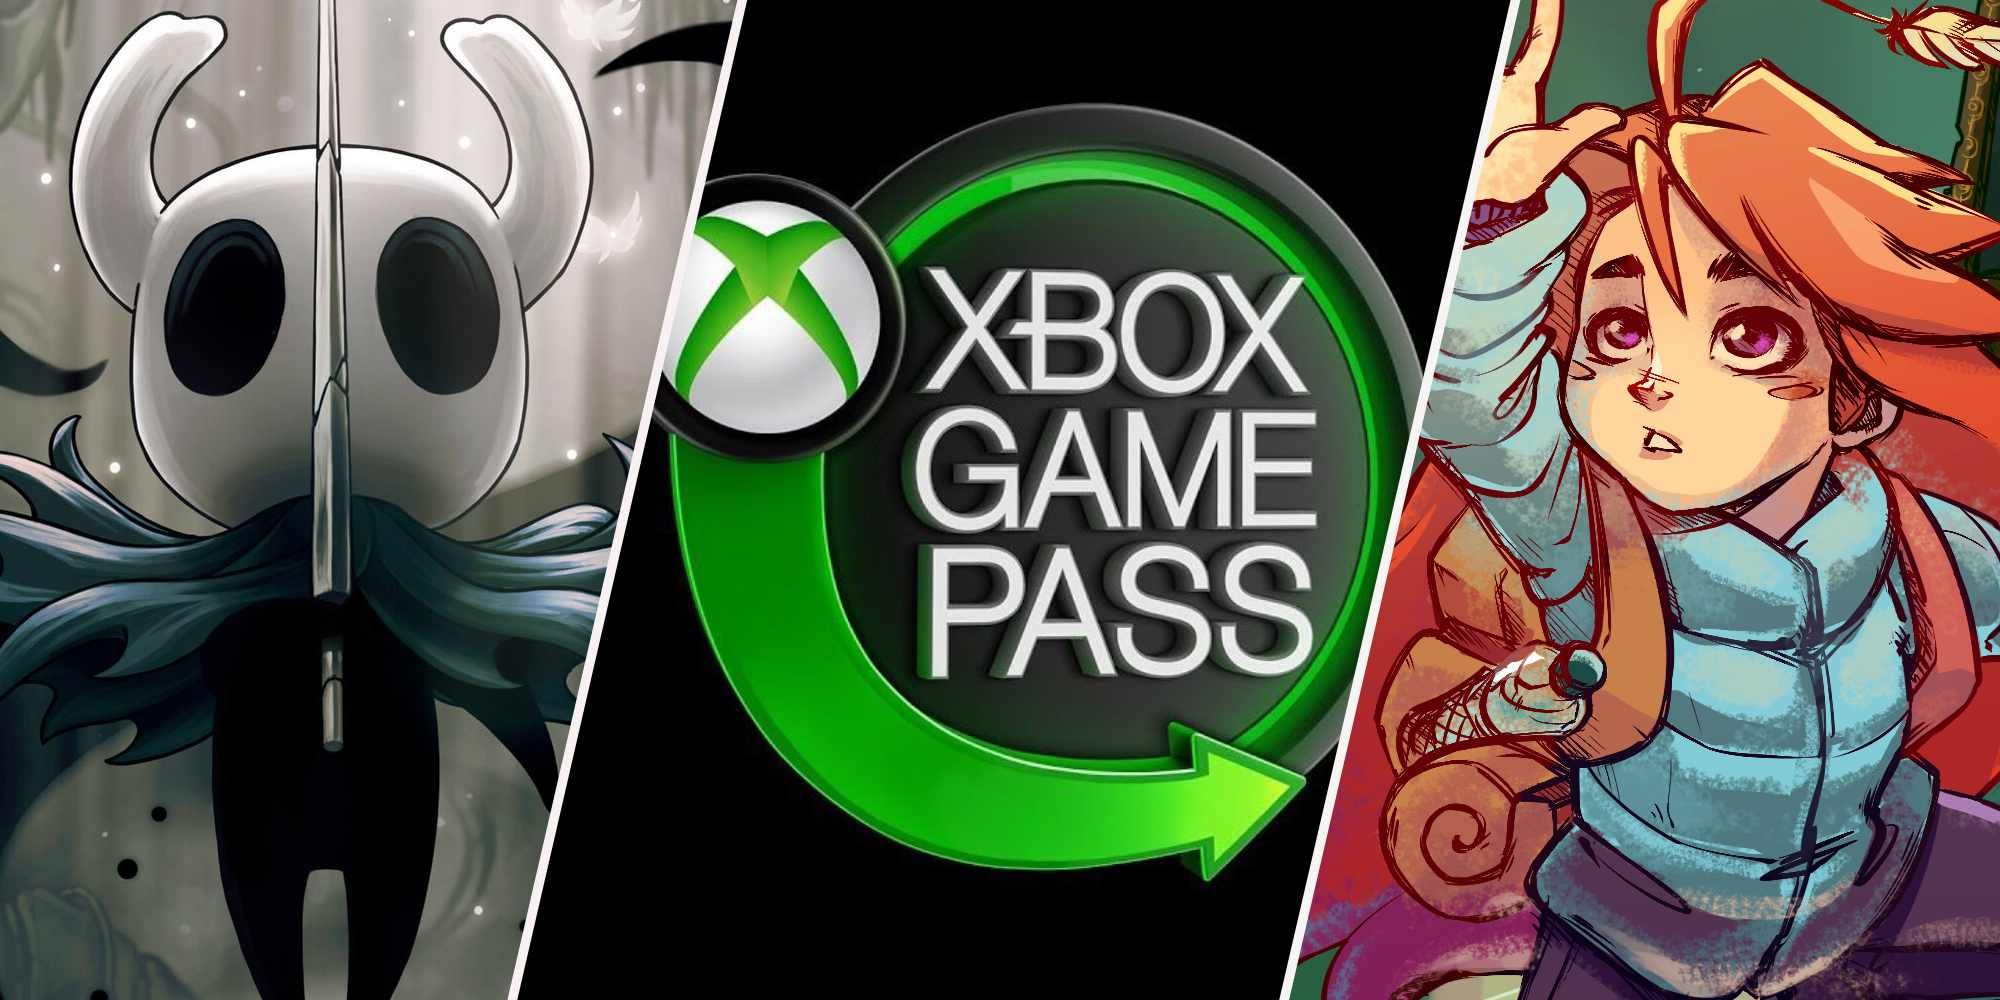 XboxBR on X: Jogos de terror + jogos independentes = promoção